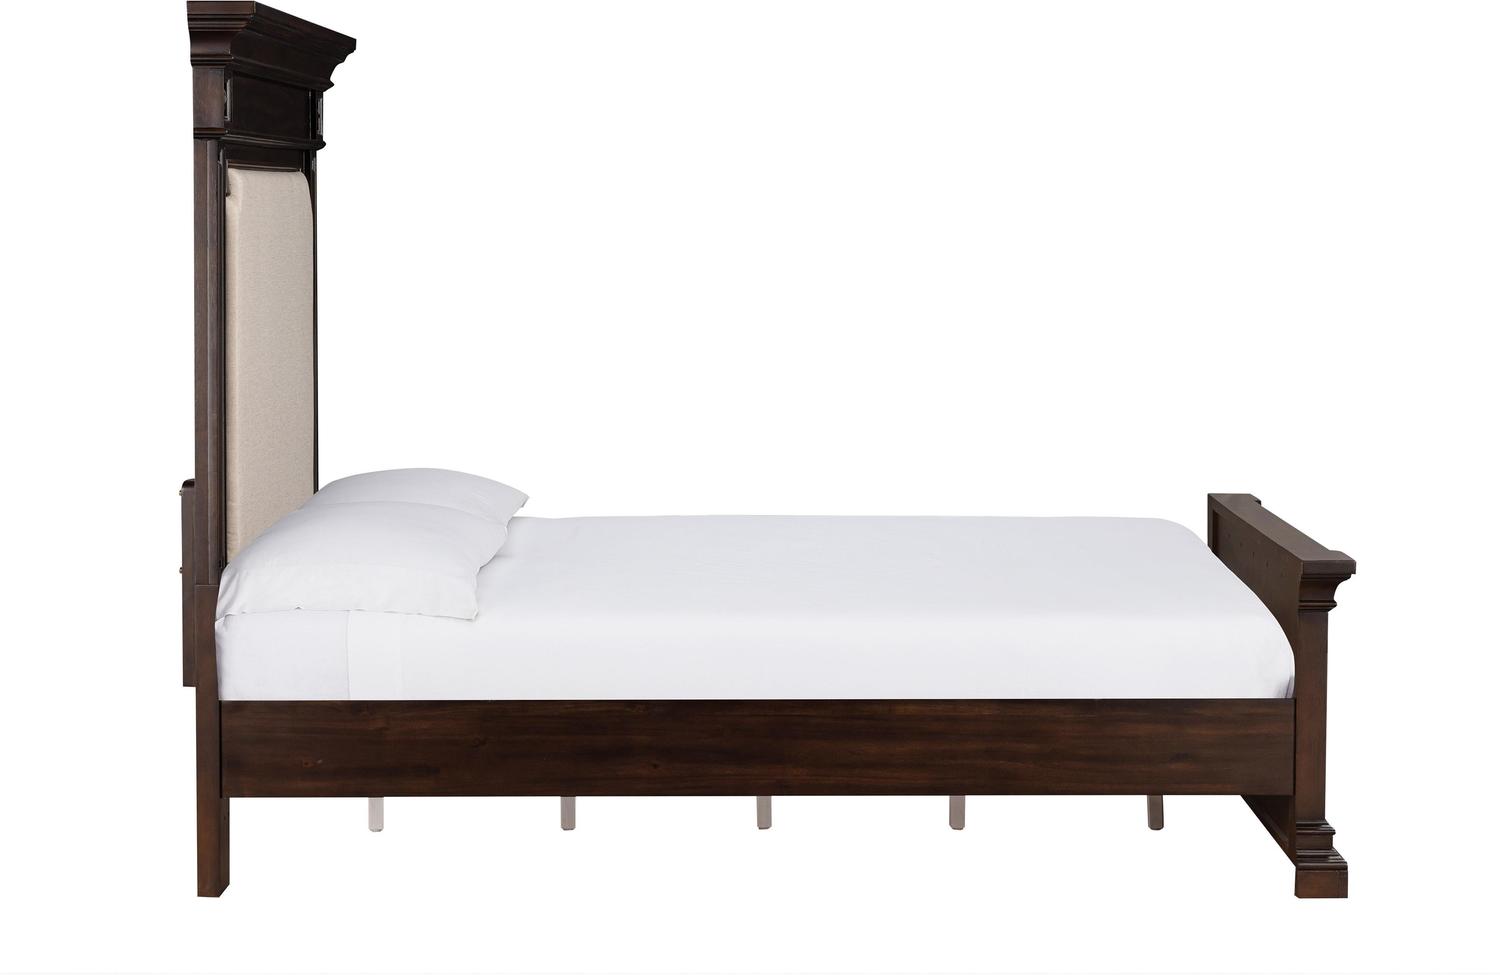 metal platform bed frame twin Tov Furniture Beds Brown,Cream